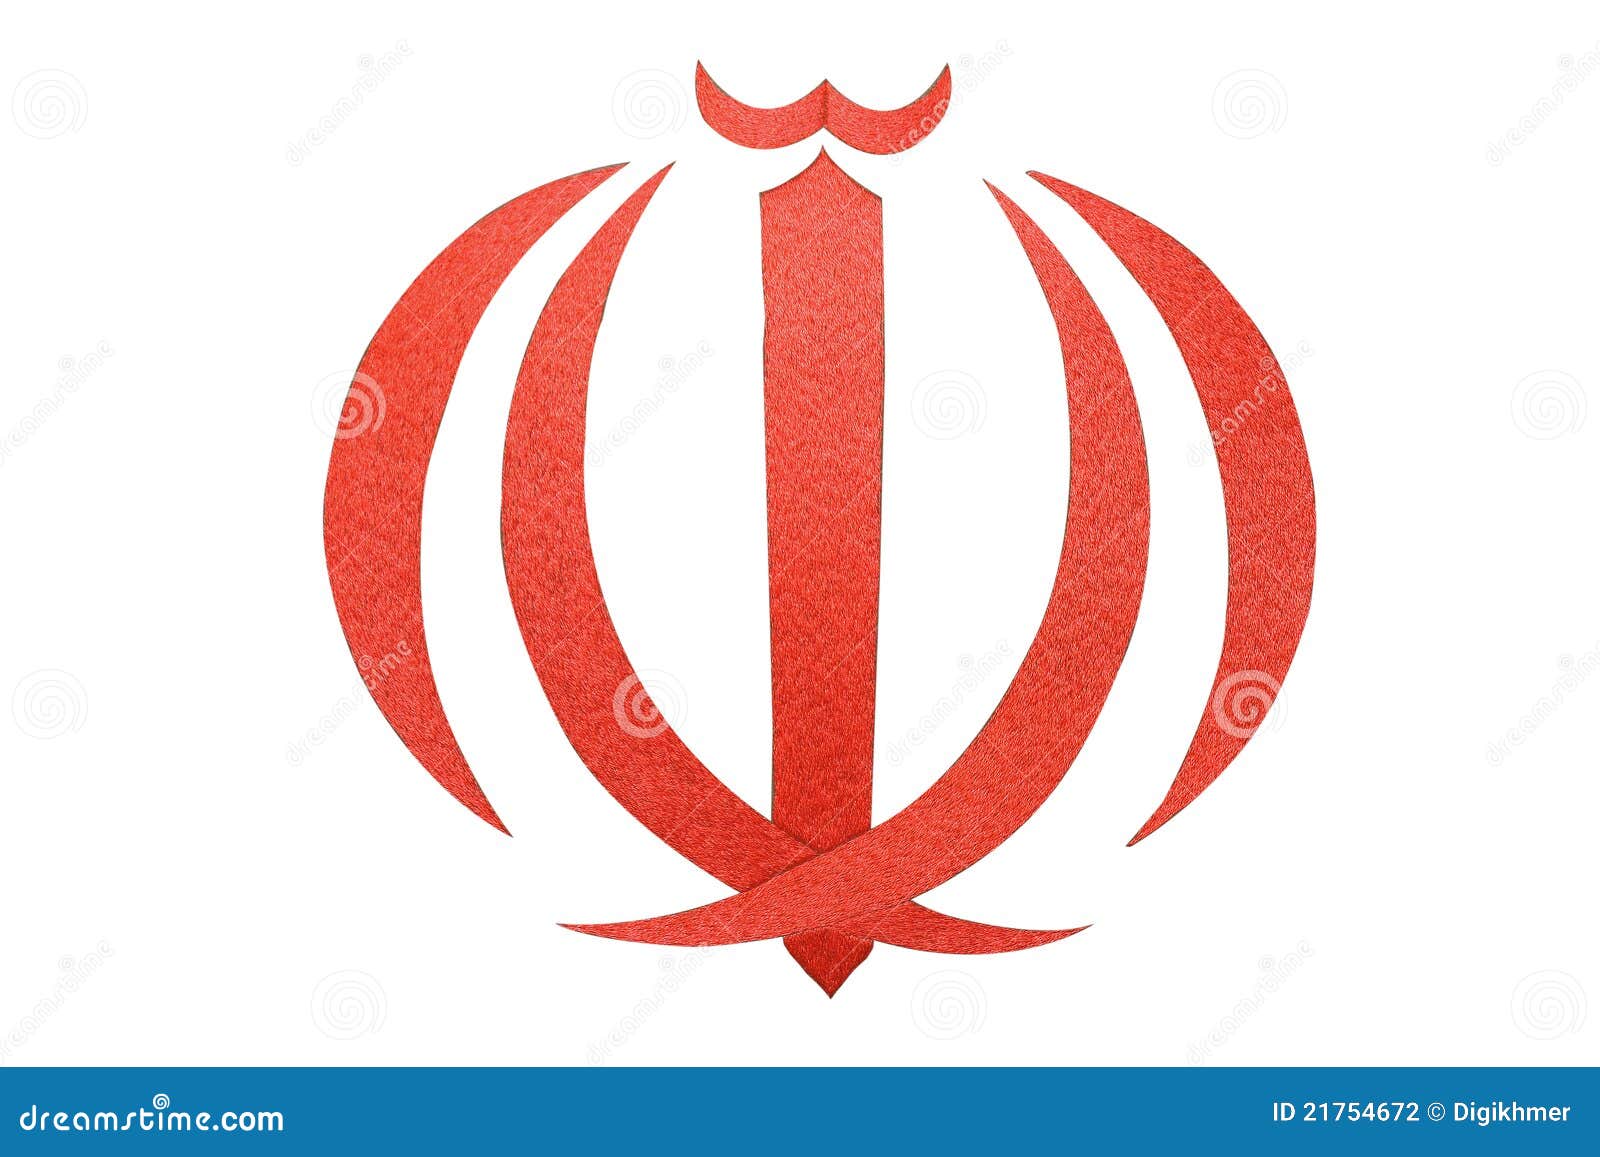 Герб ирана. Иран флаг и герб. Иран флаг знак. Символ на флаге Ирана.